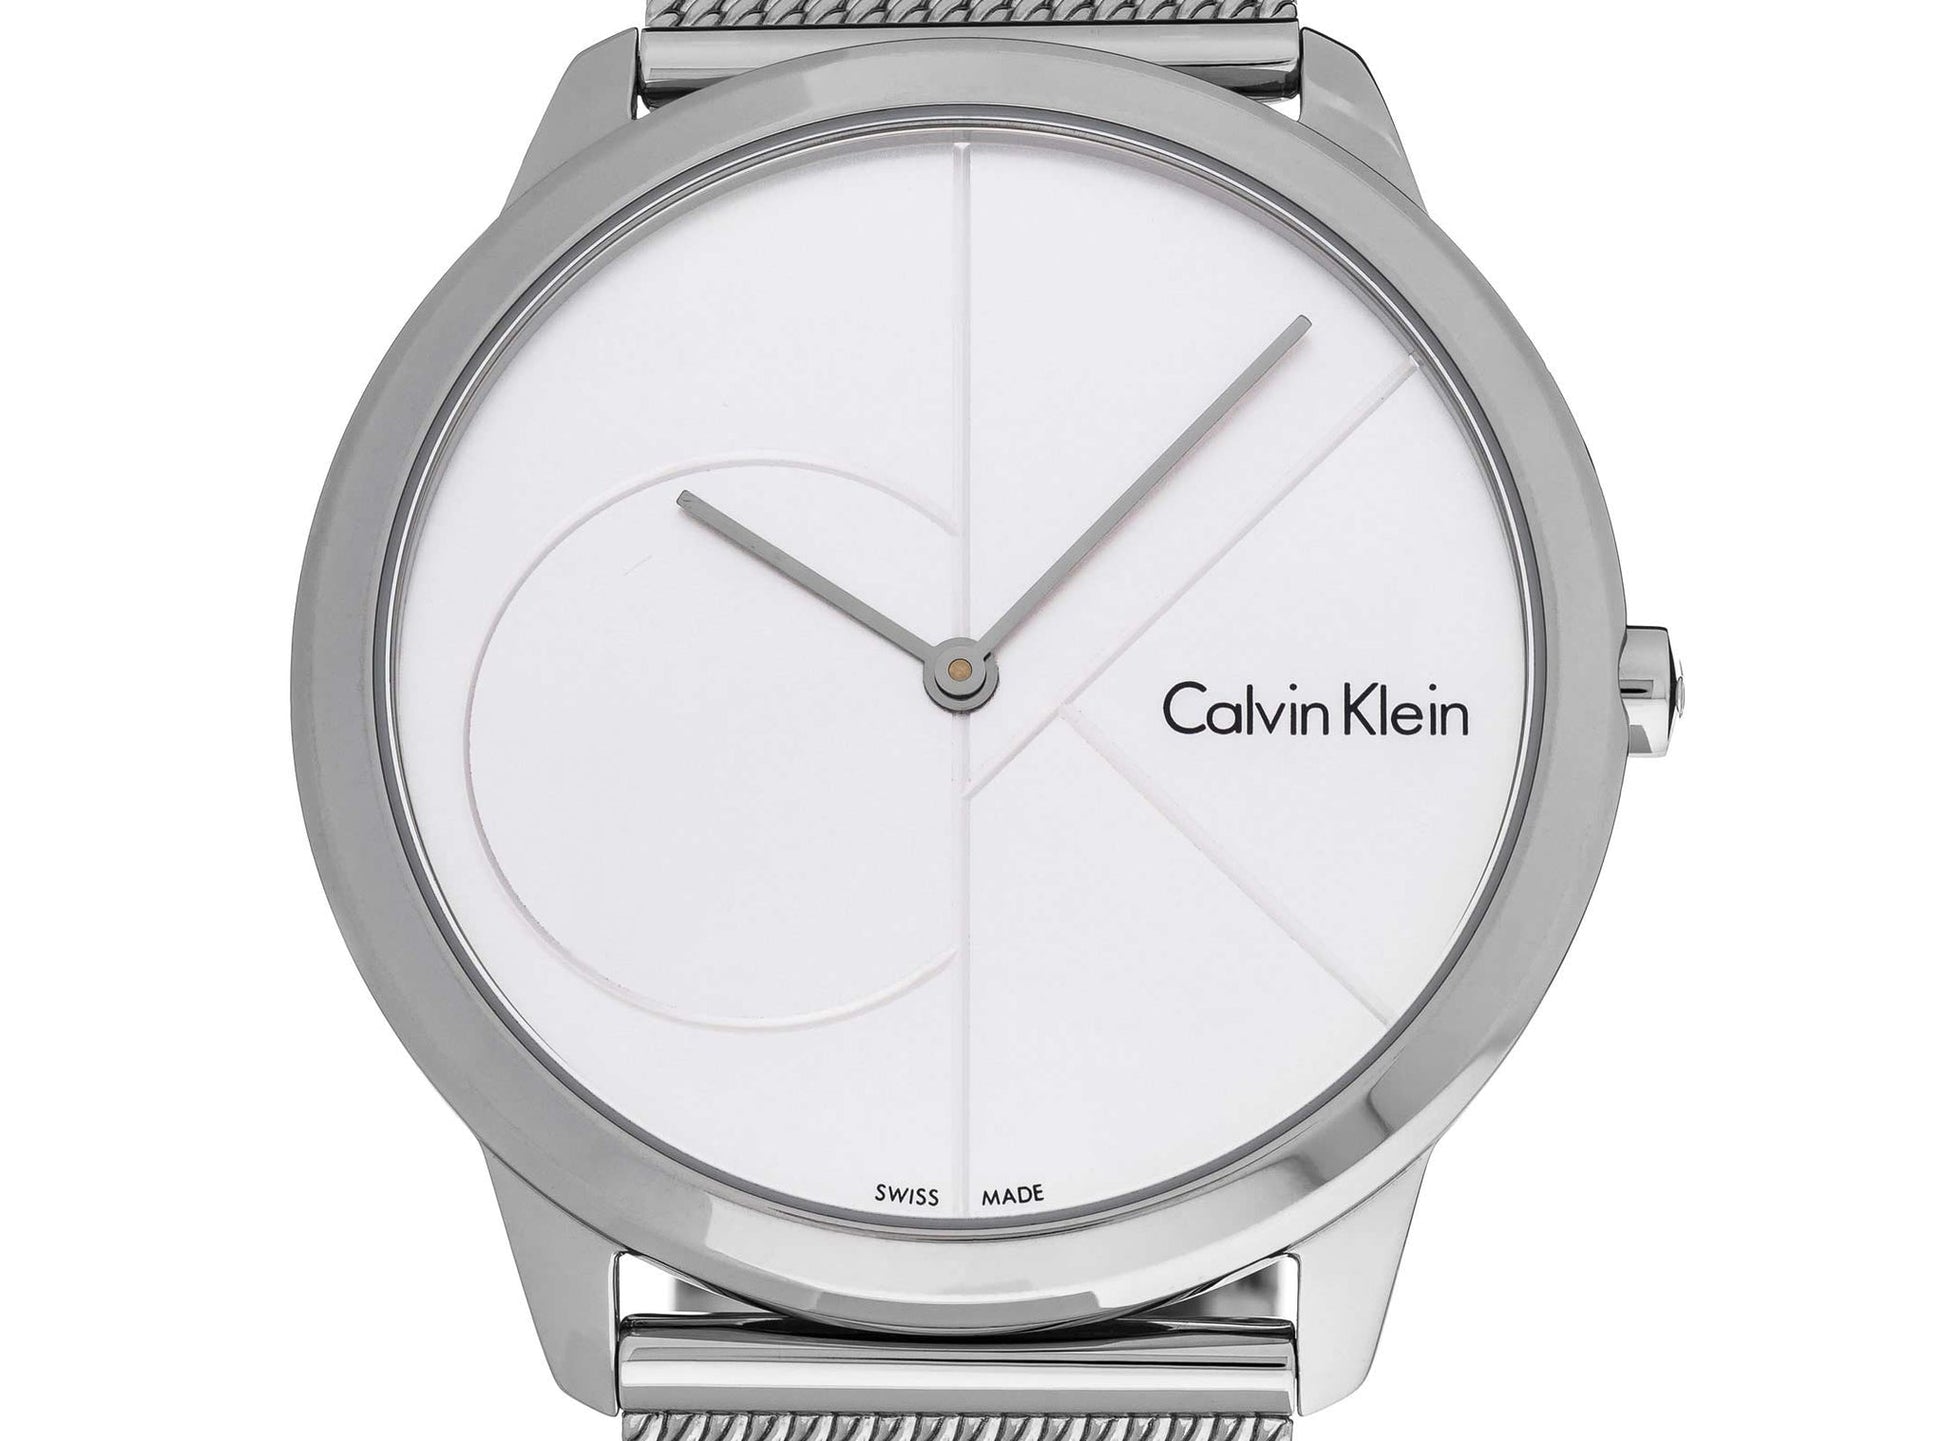 Calvin Klein Minimal Silver Dial Silver Mesh Bracelet Watch for Men - K3M2112Z